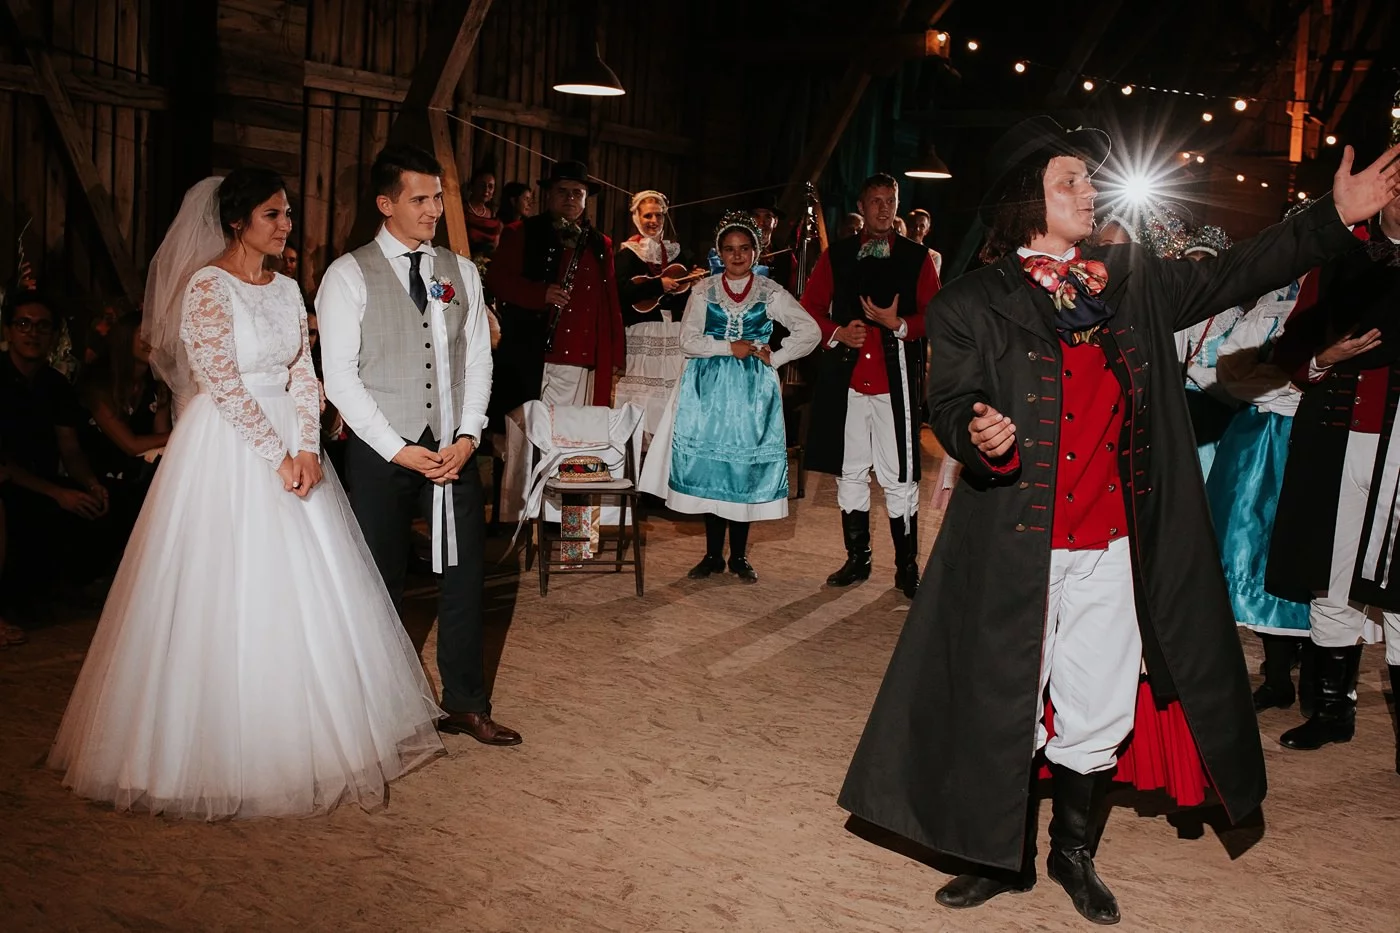 Dominika & Aleksander - Rustykalne wesele w stodole - Baborówko 129